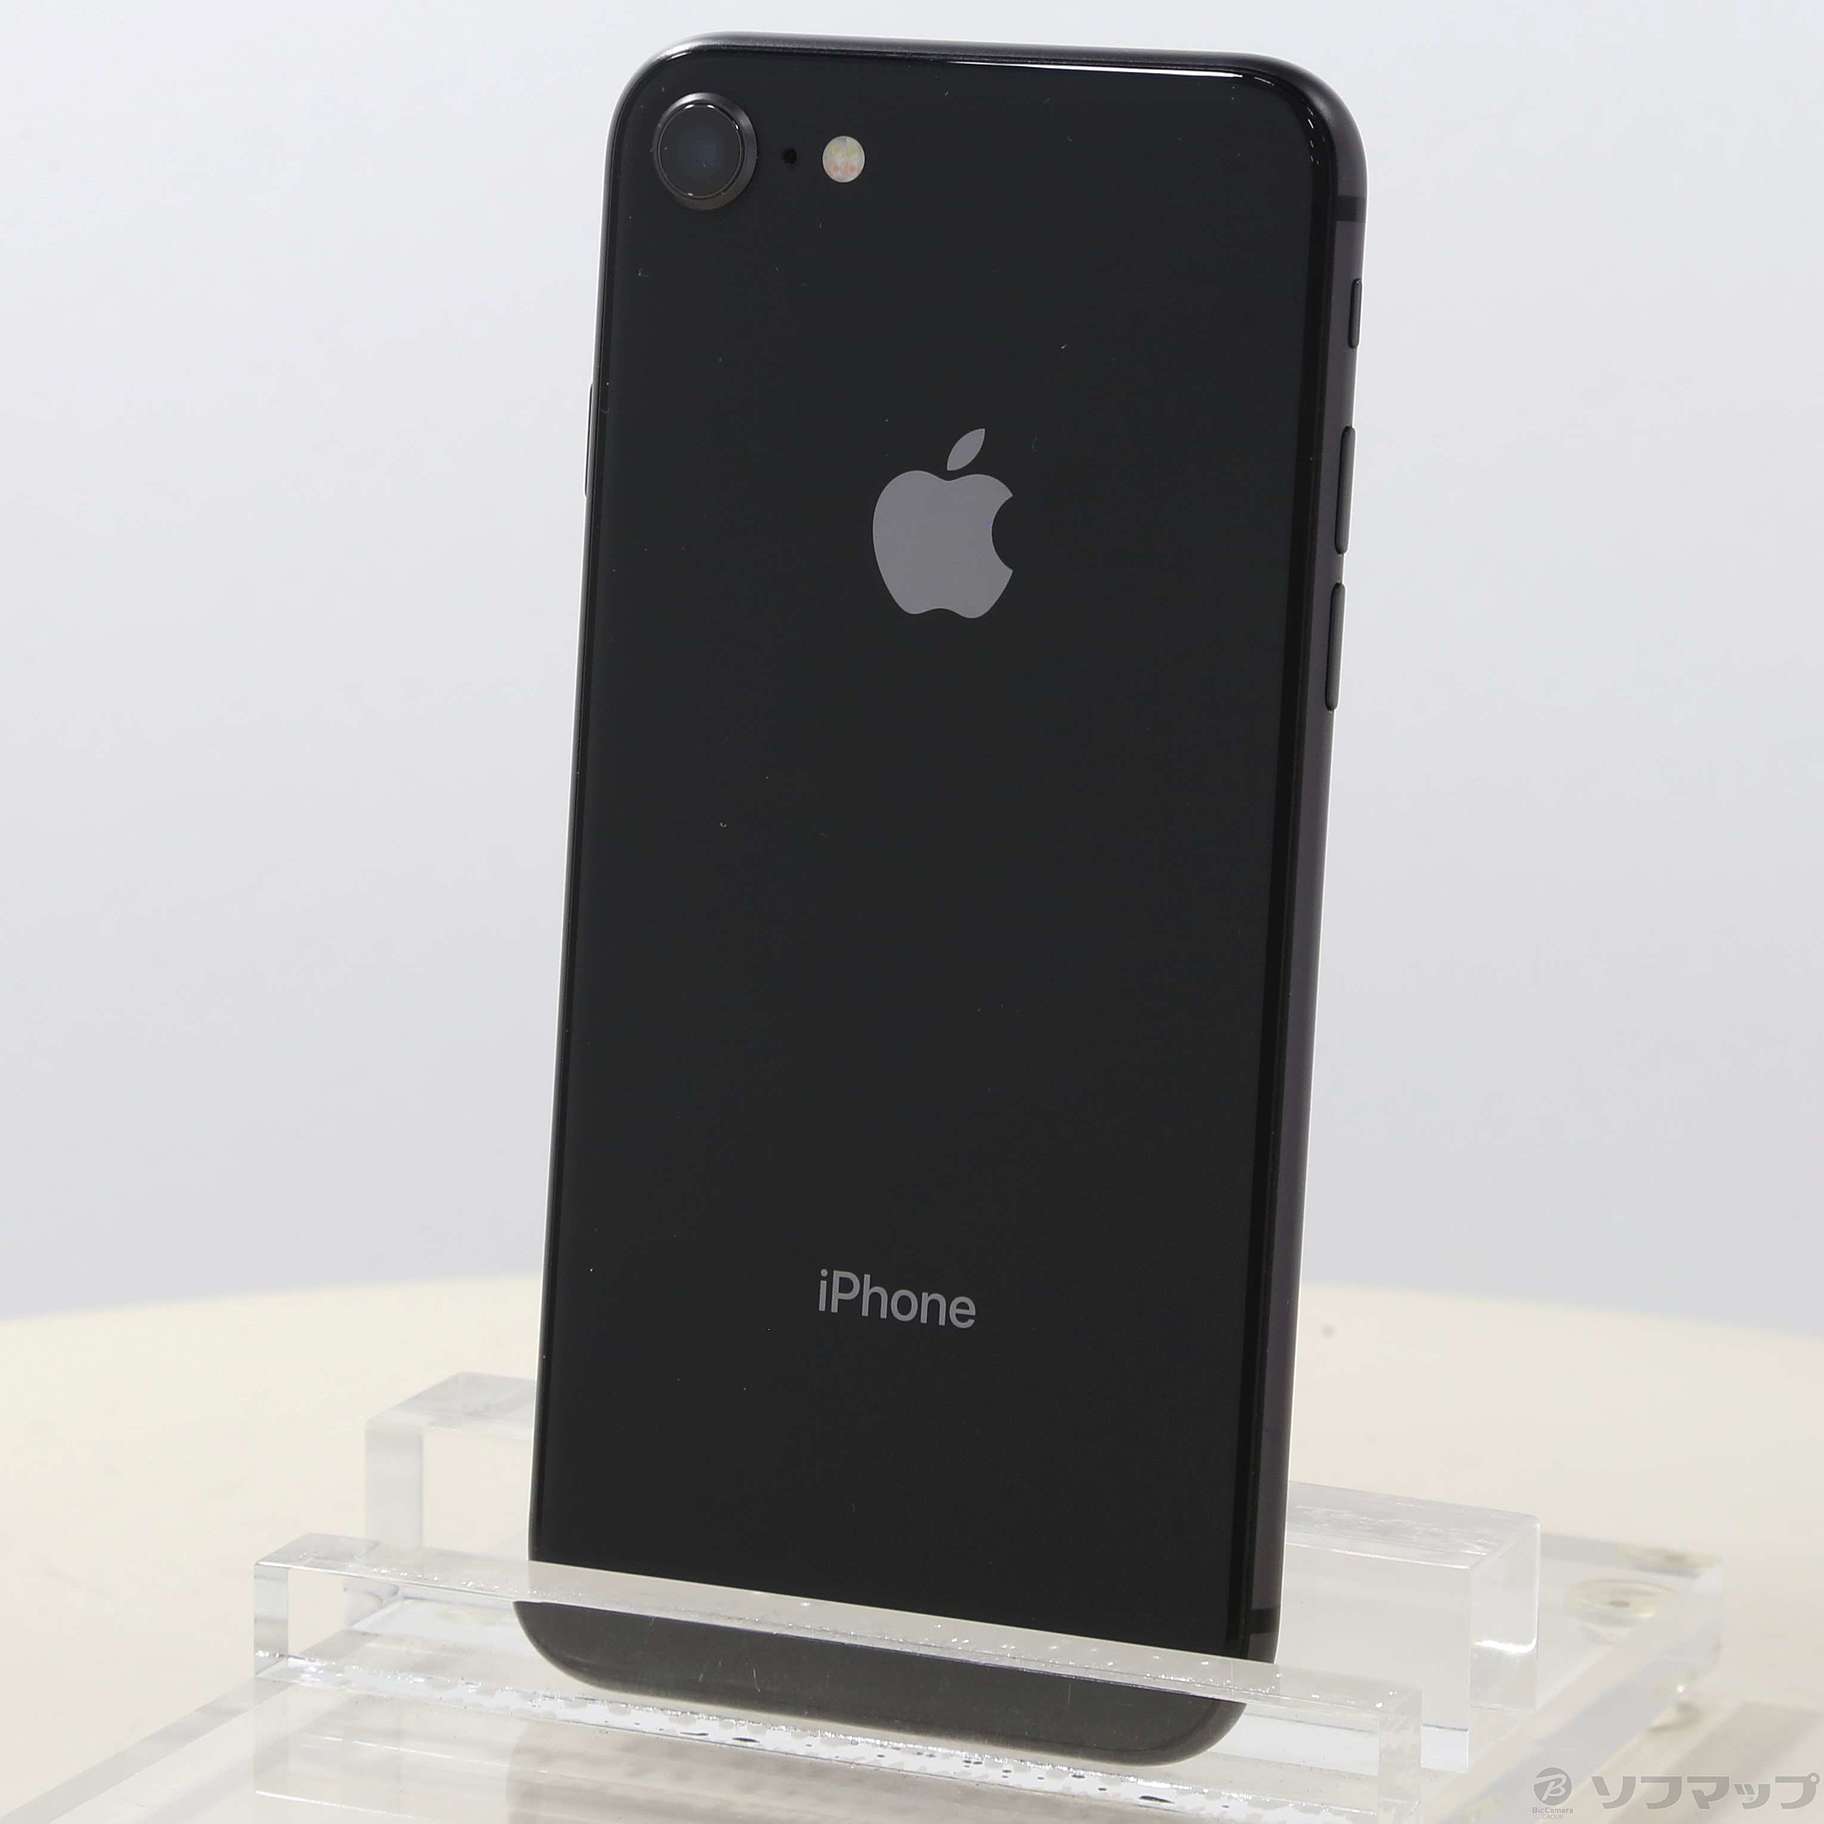 スマートフォン/携帯電話iPhone 8 Space Gray 256 GB Softbank